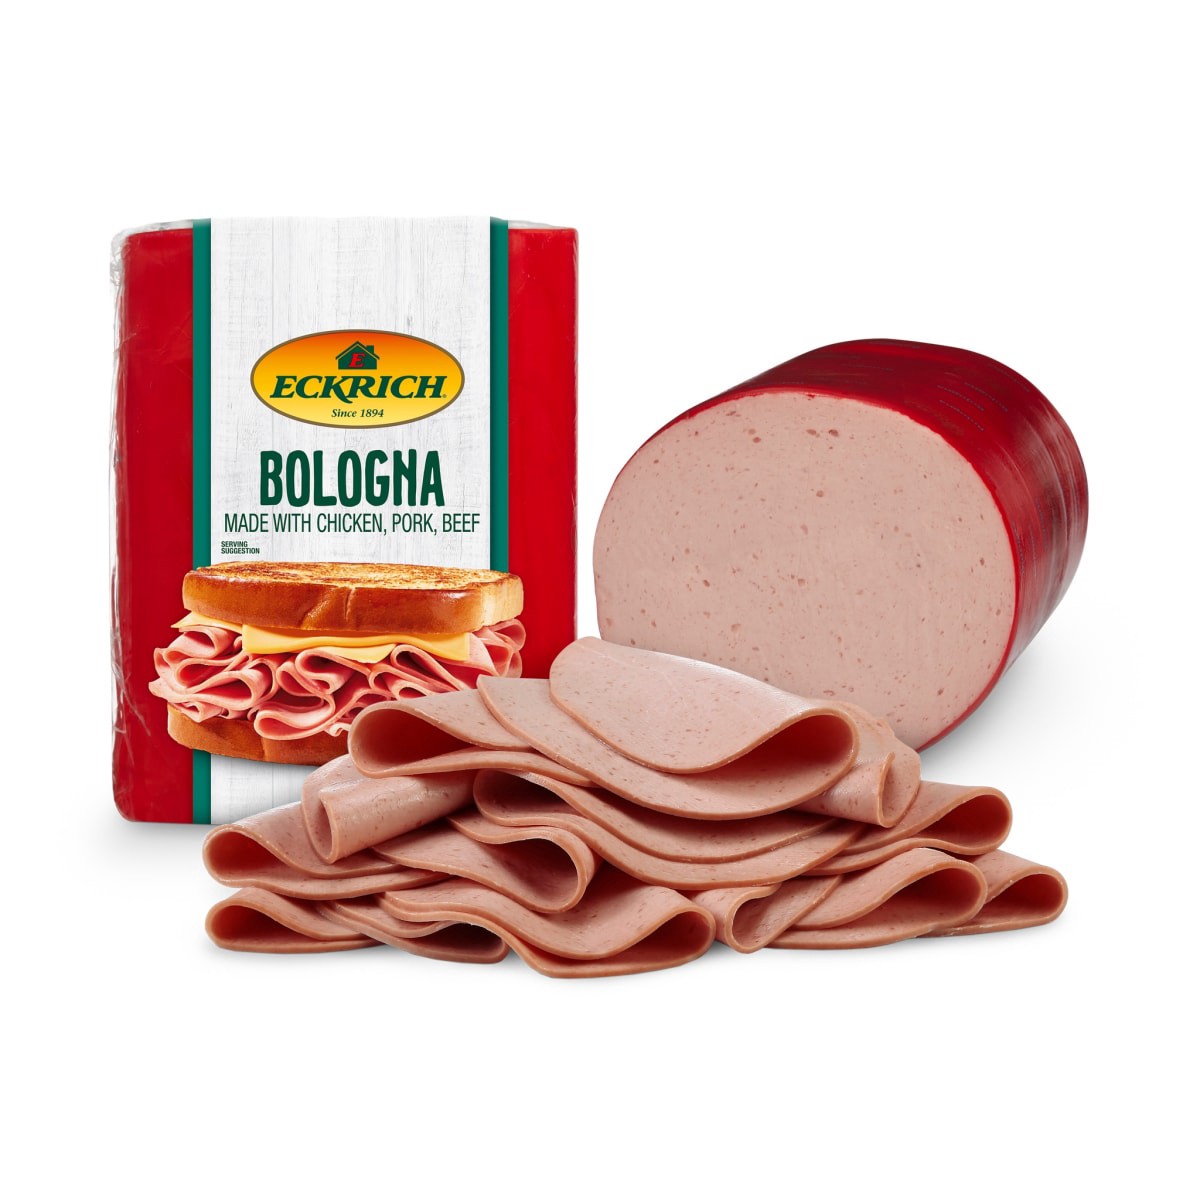 slide 1 of 5, Eckrich Original Bologna, per lb